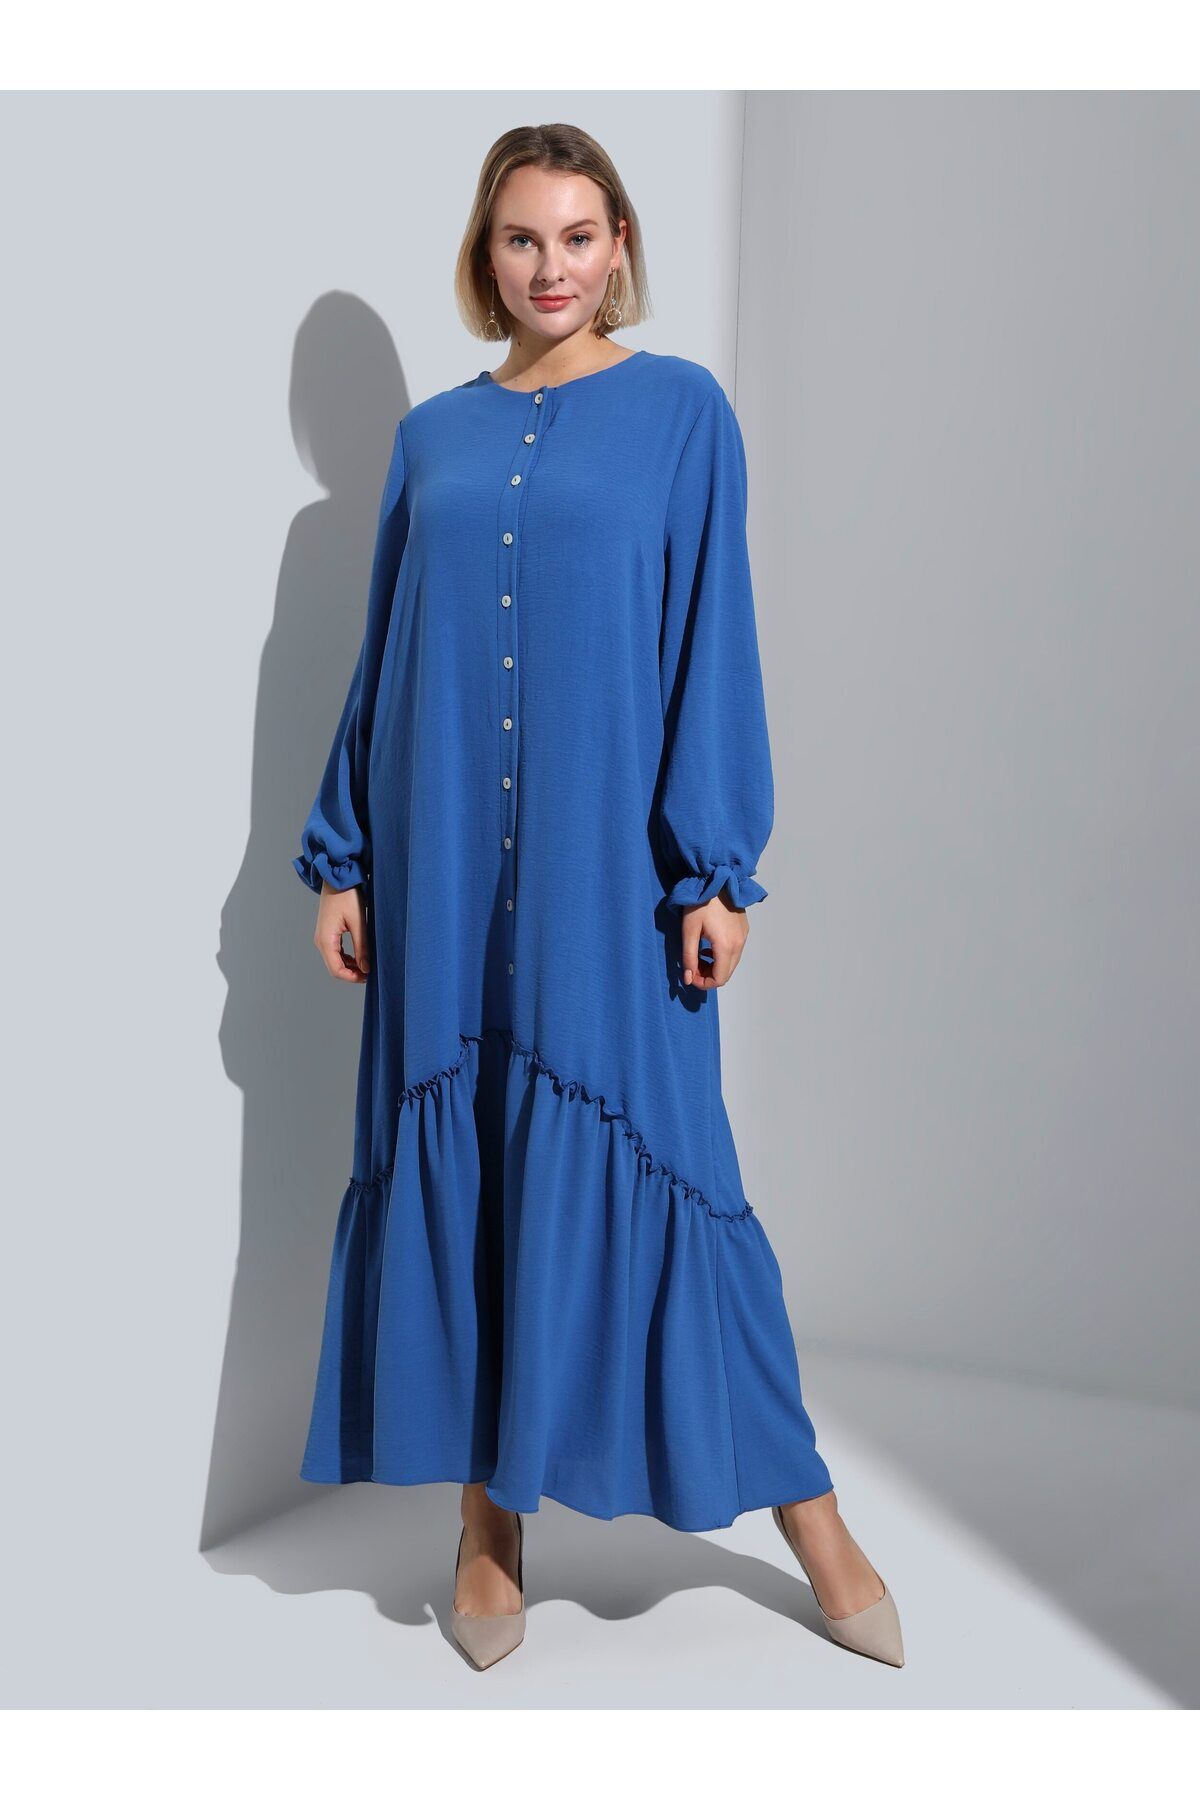 Alia Büyük Beden Boydan Düğmeli Aerobin Elbise - İndigo Mavi - Alia